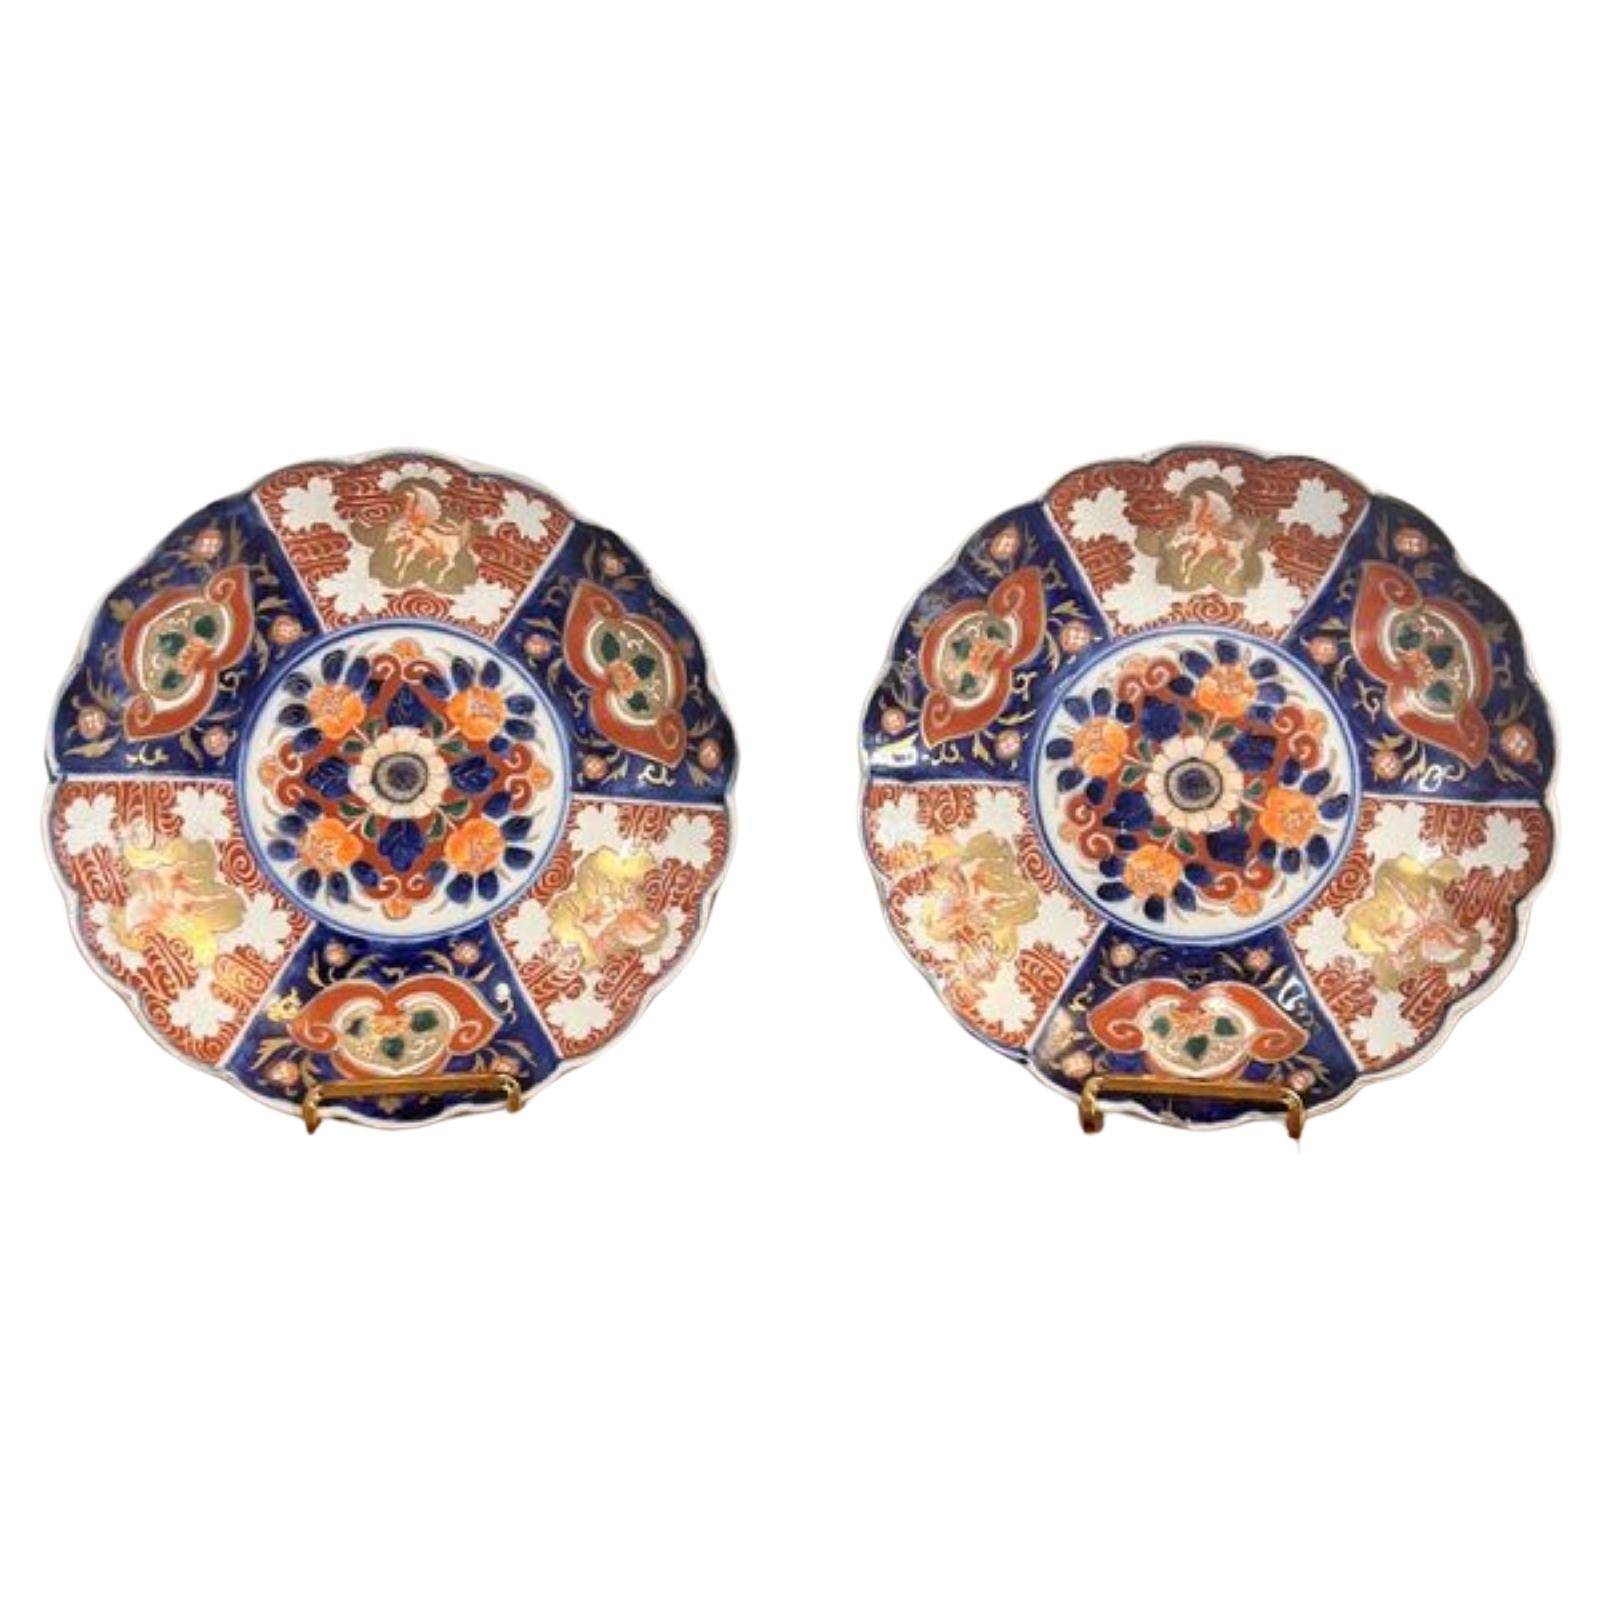 Fantastisches Paar antiker japanischer Imari-Teller in hervorragender Qualität 